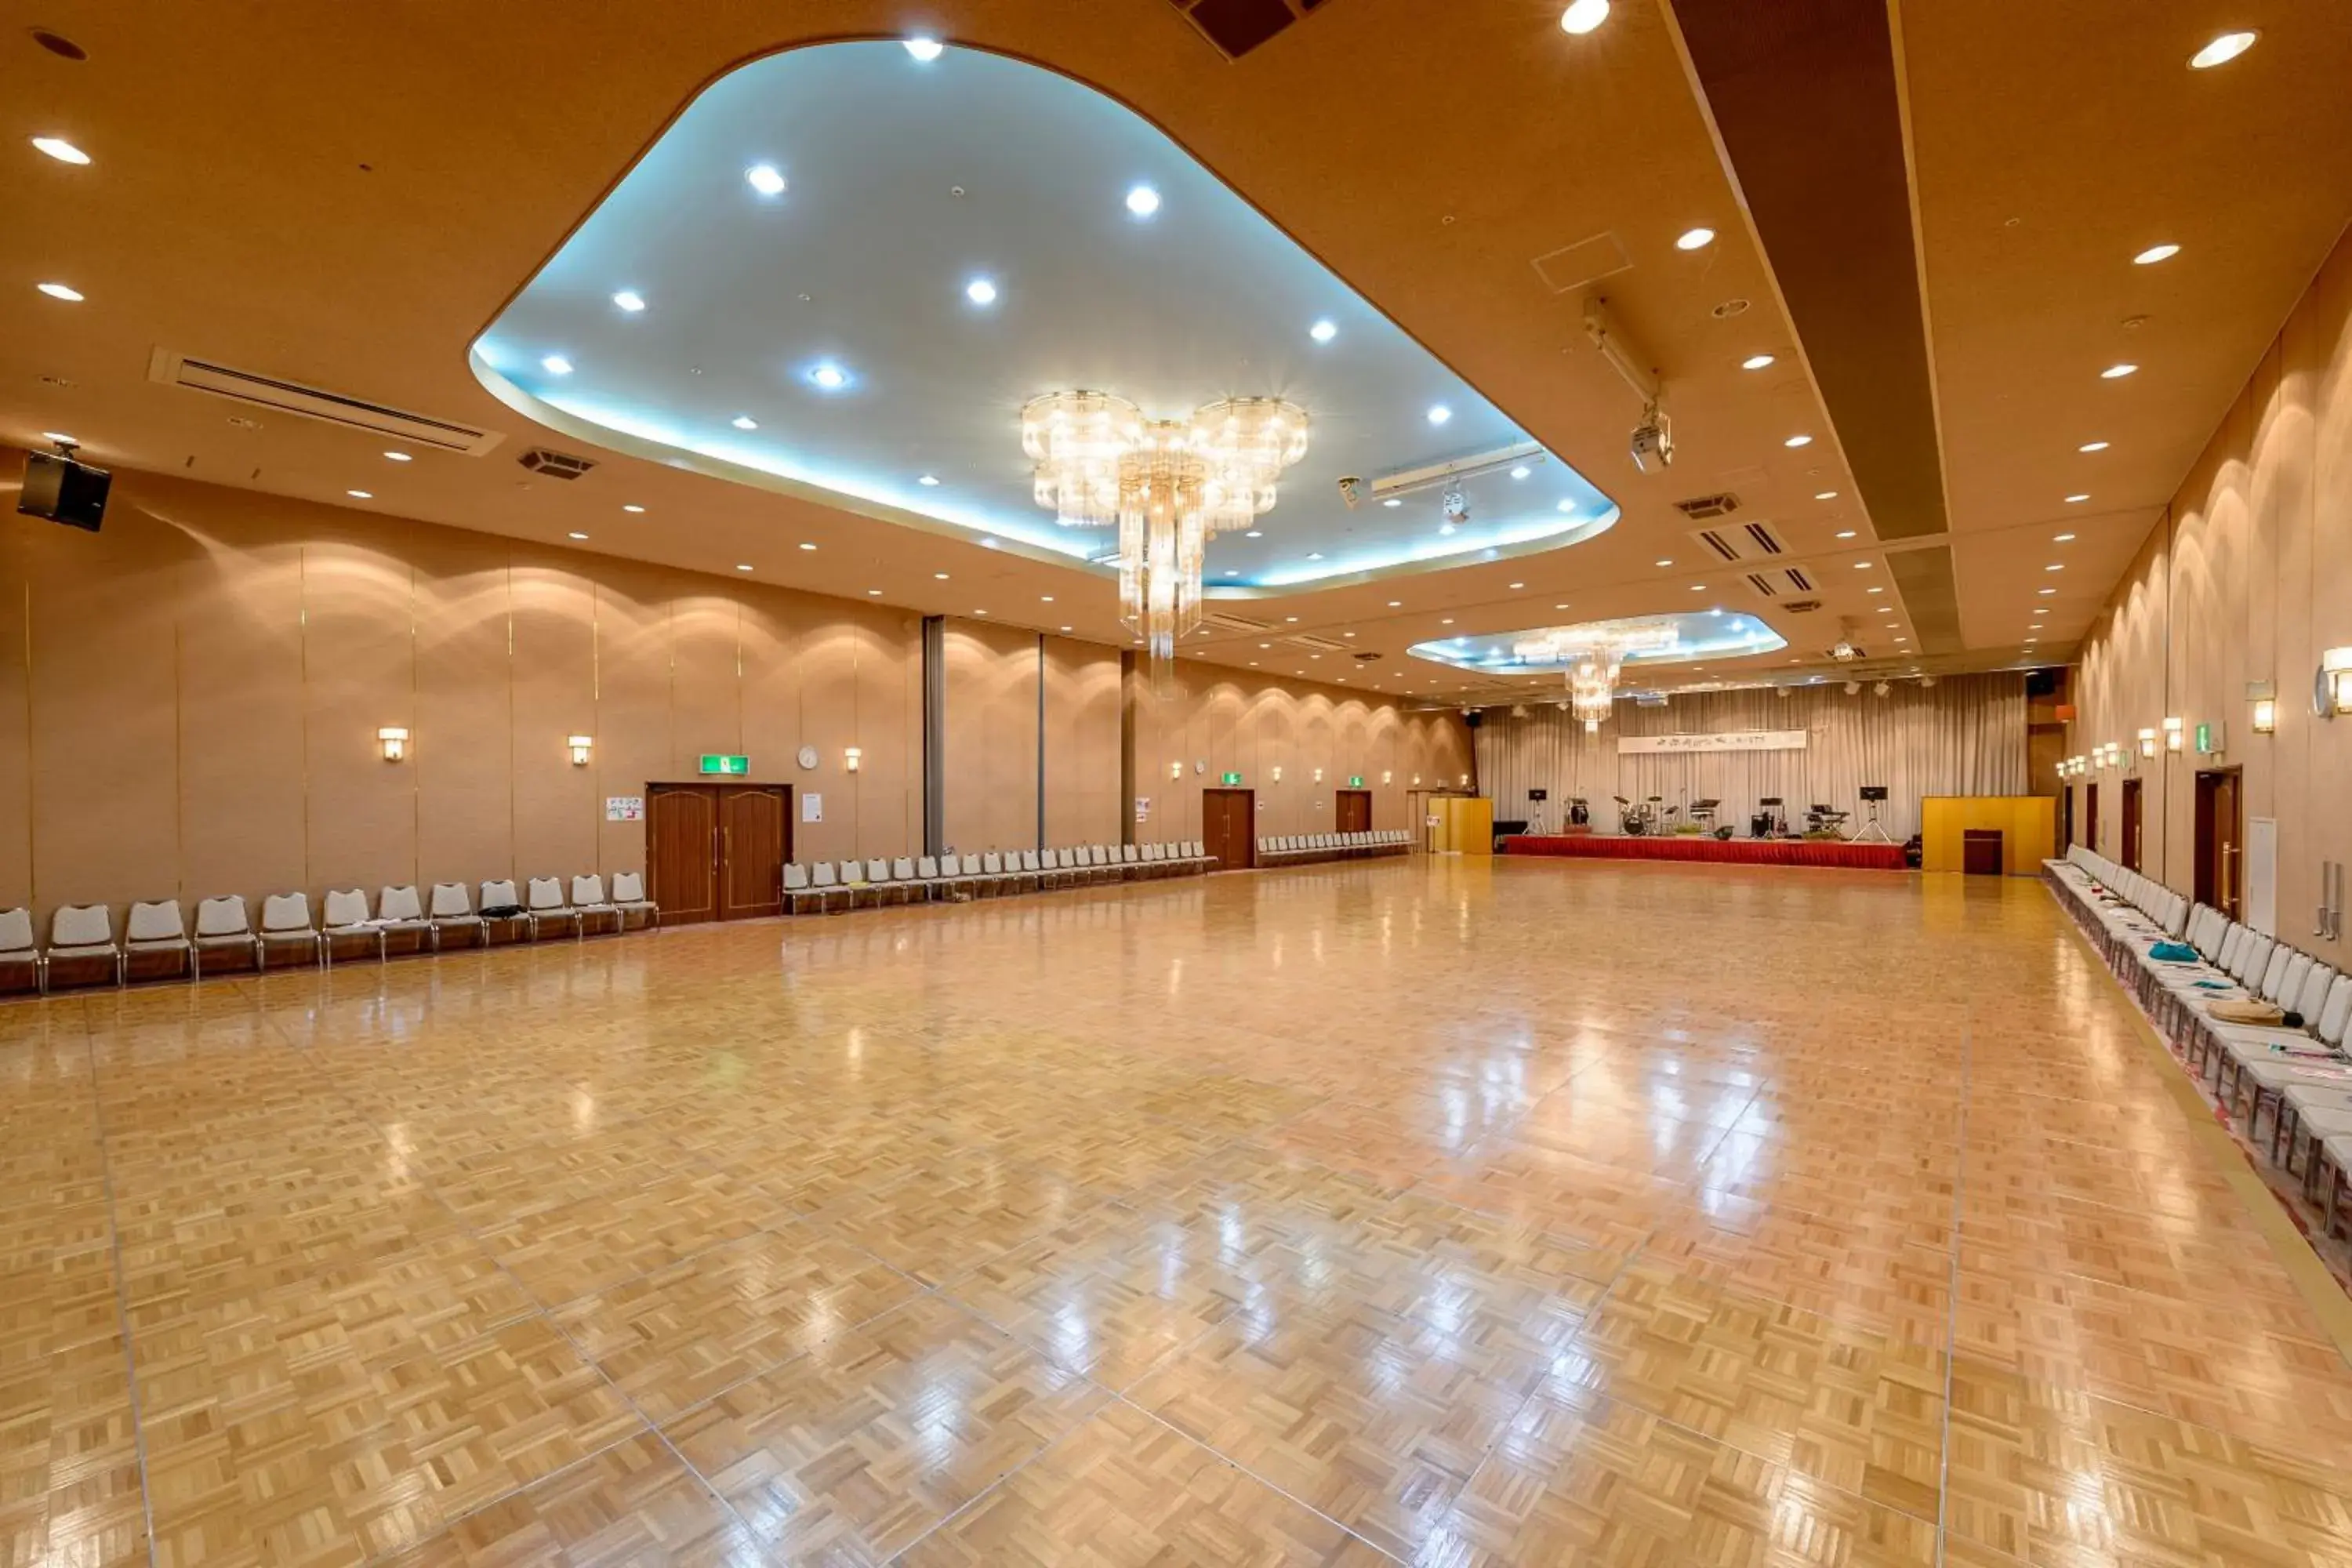 Banquet/Function facilities, Banquet Facilities in Hotel Tagawa